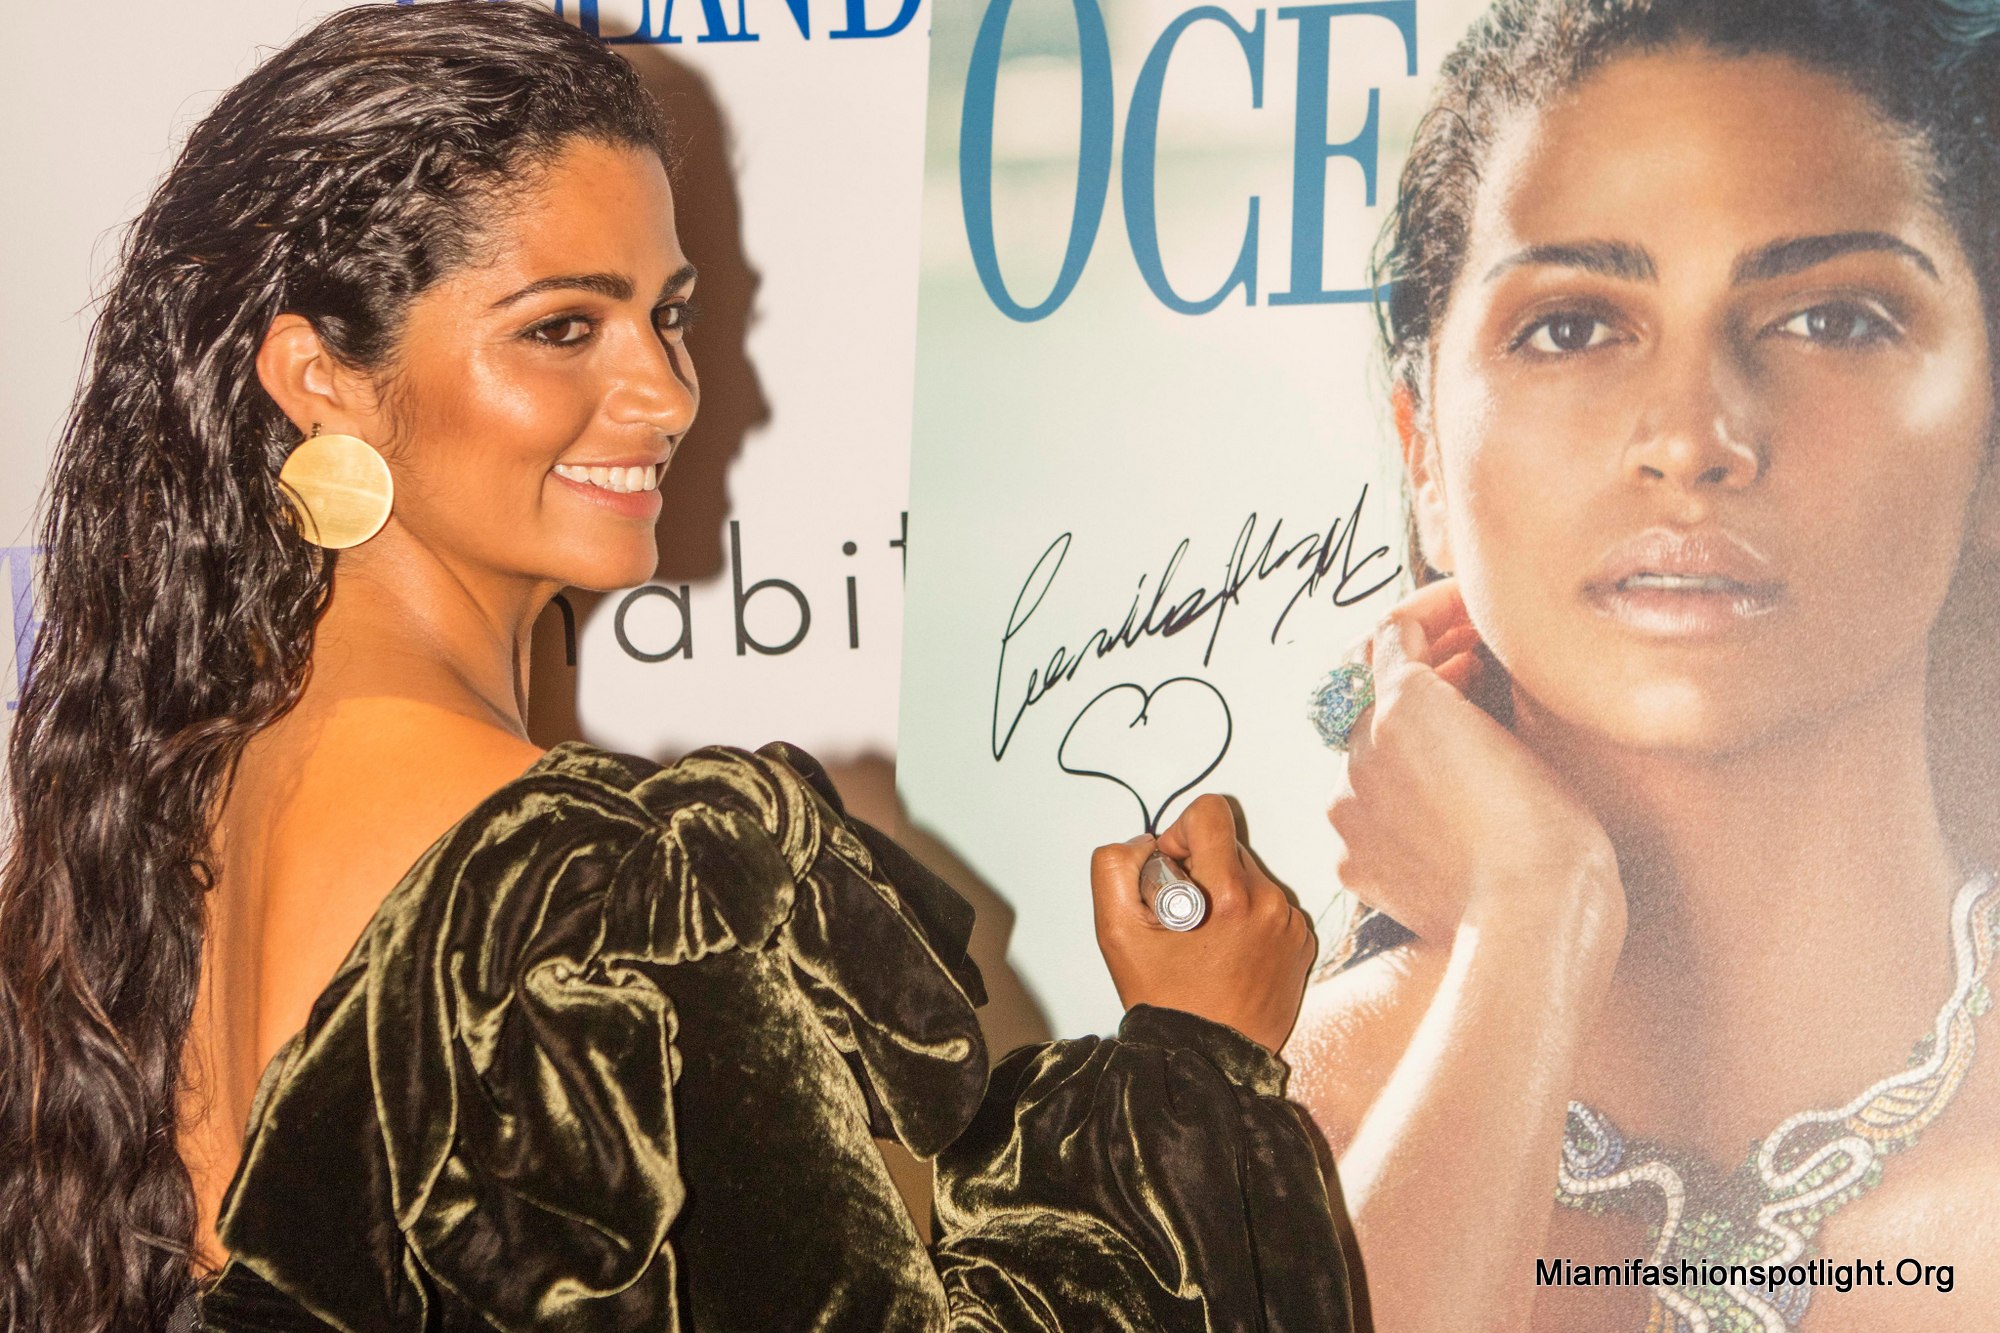 La Revista Ocean Drive Celebra Portada de Noviembre con Camila Alves McConaughey en Habitat